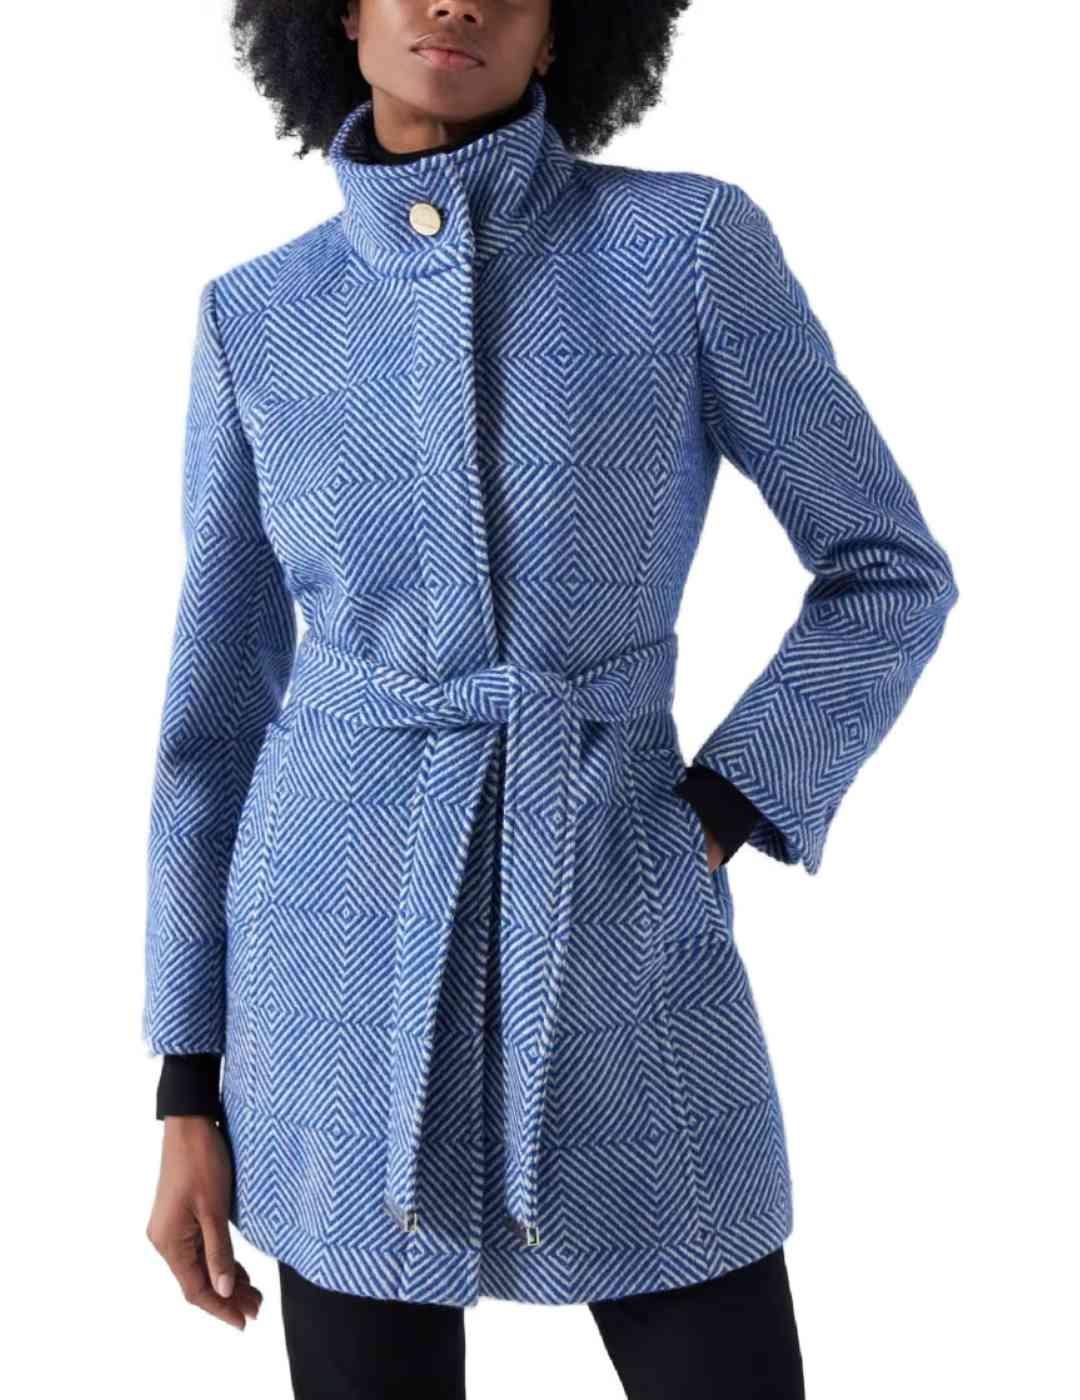 Abrigo Salsa Burel de lana geométrico azul y blanco de mujer